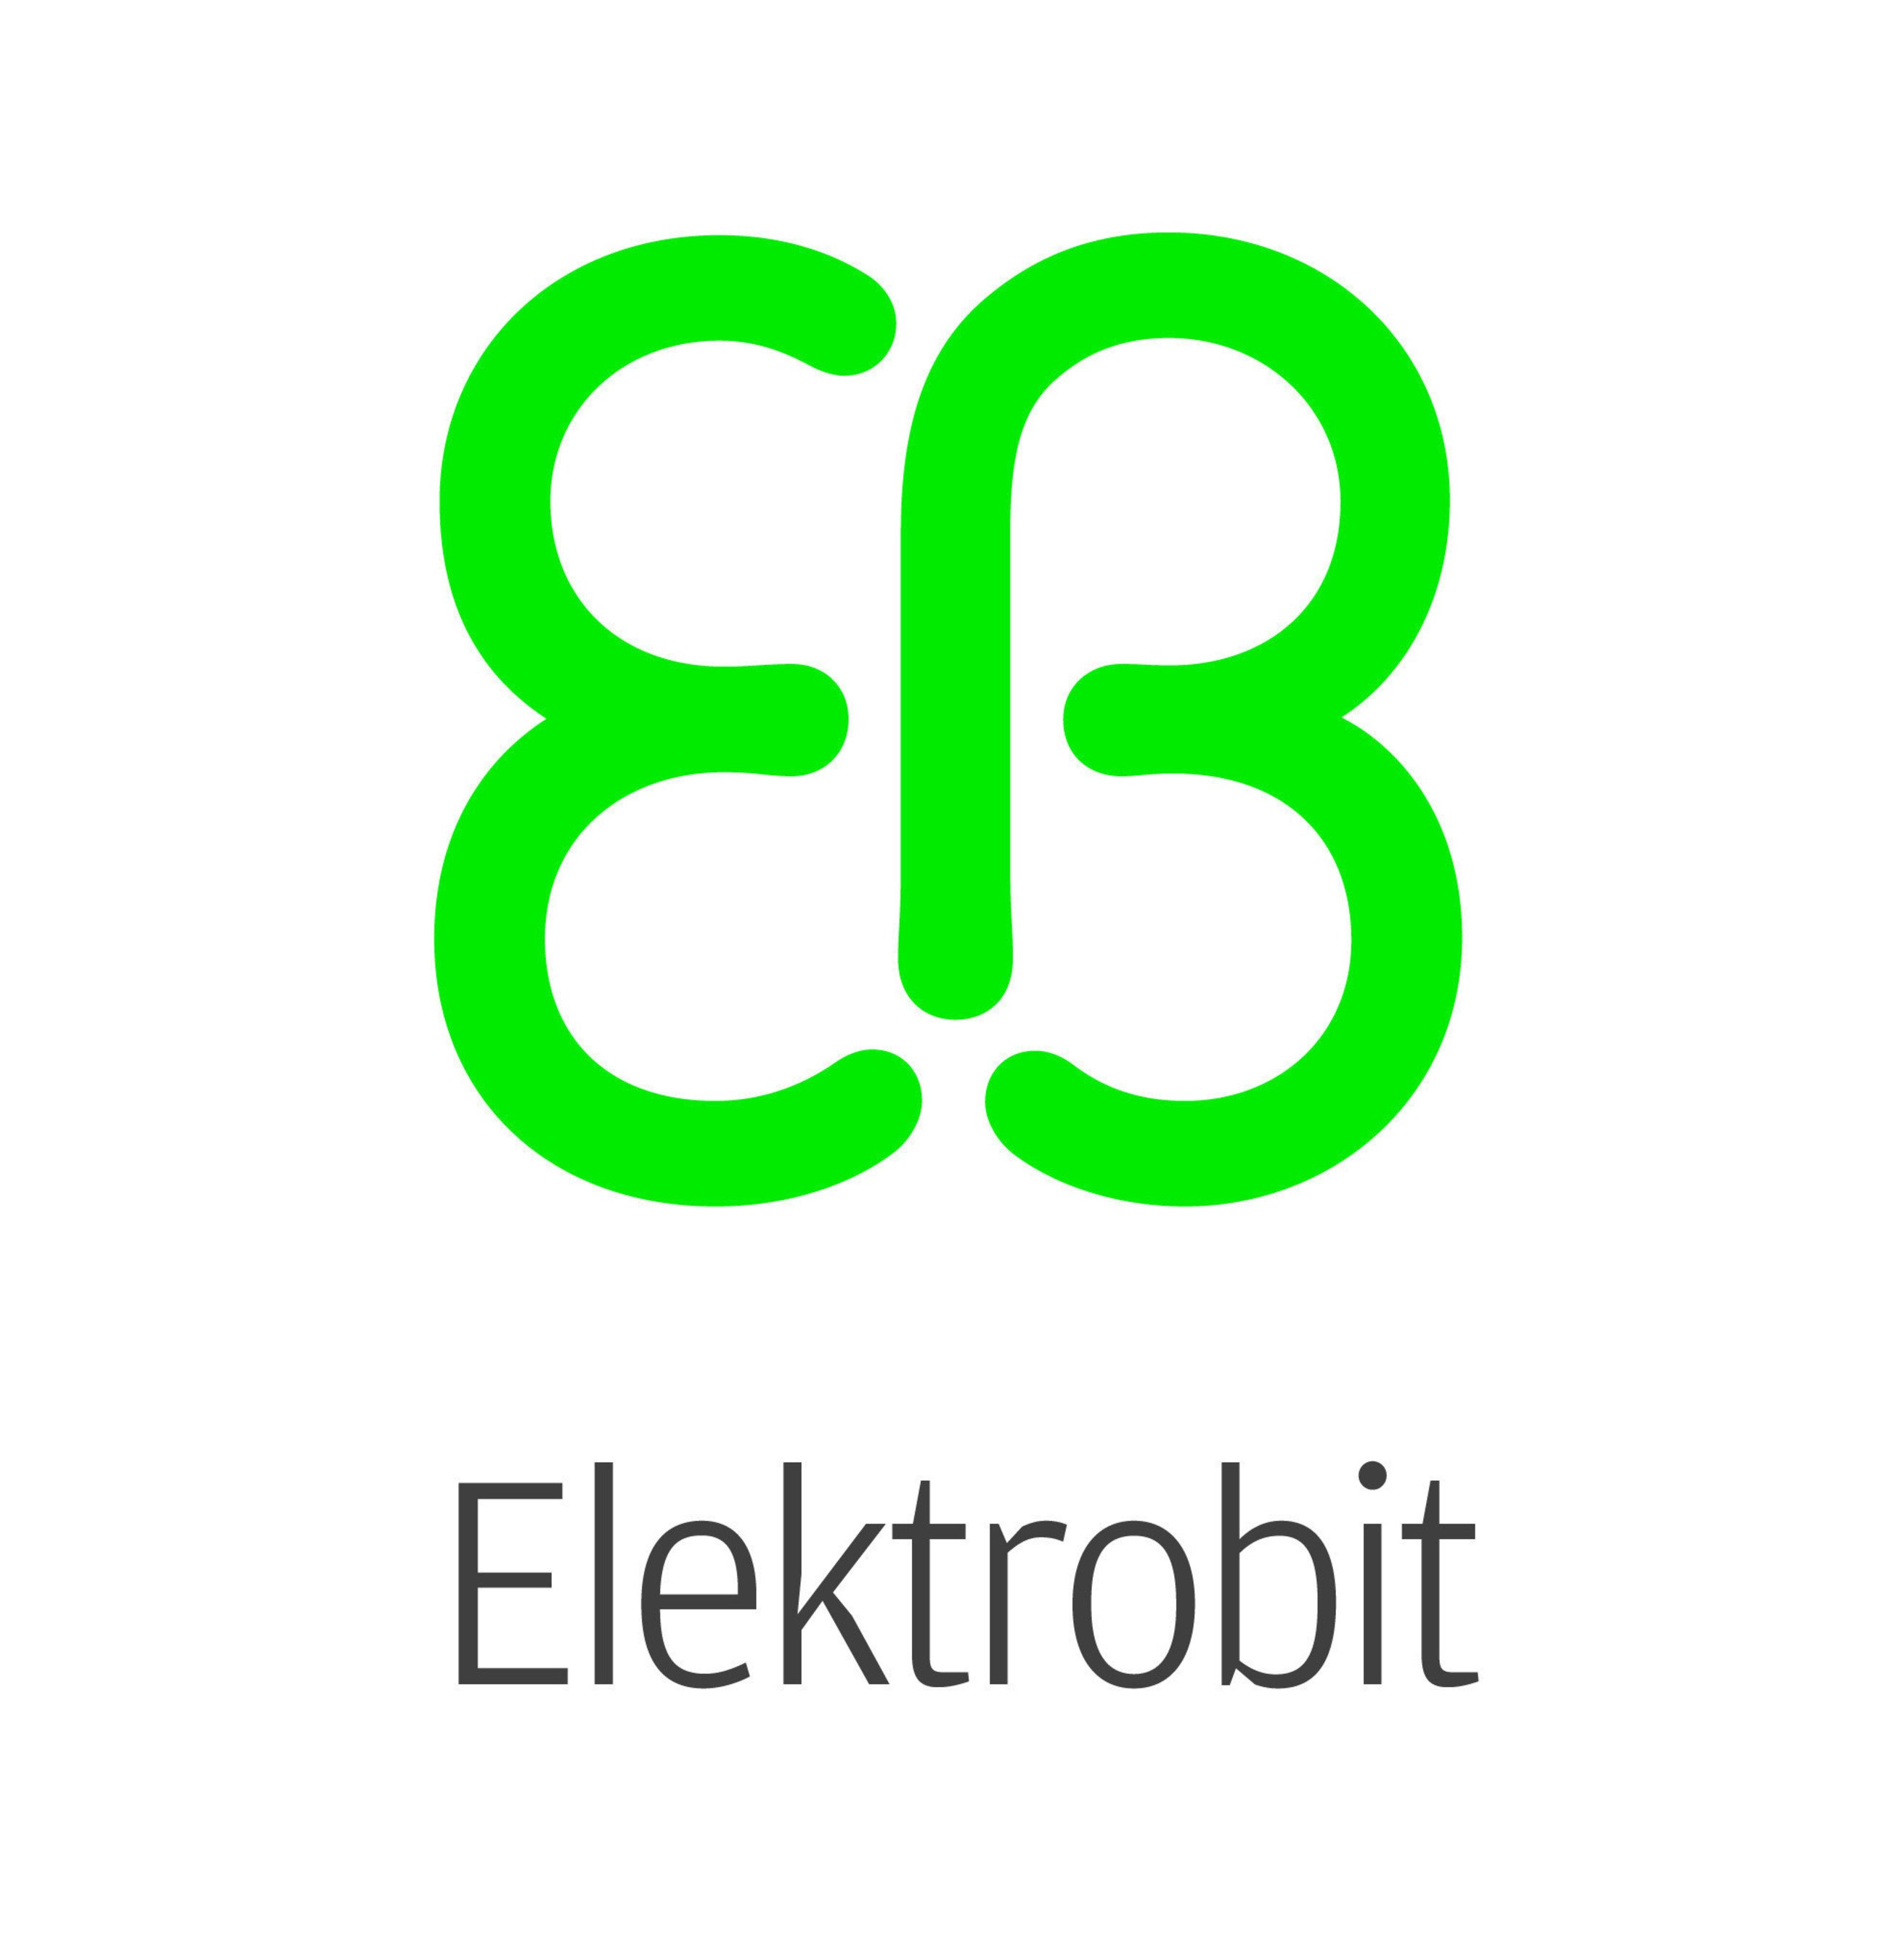 Elektrobit Automotive GmbH